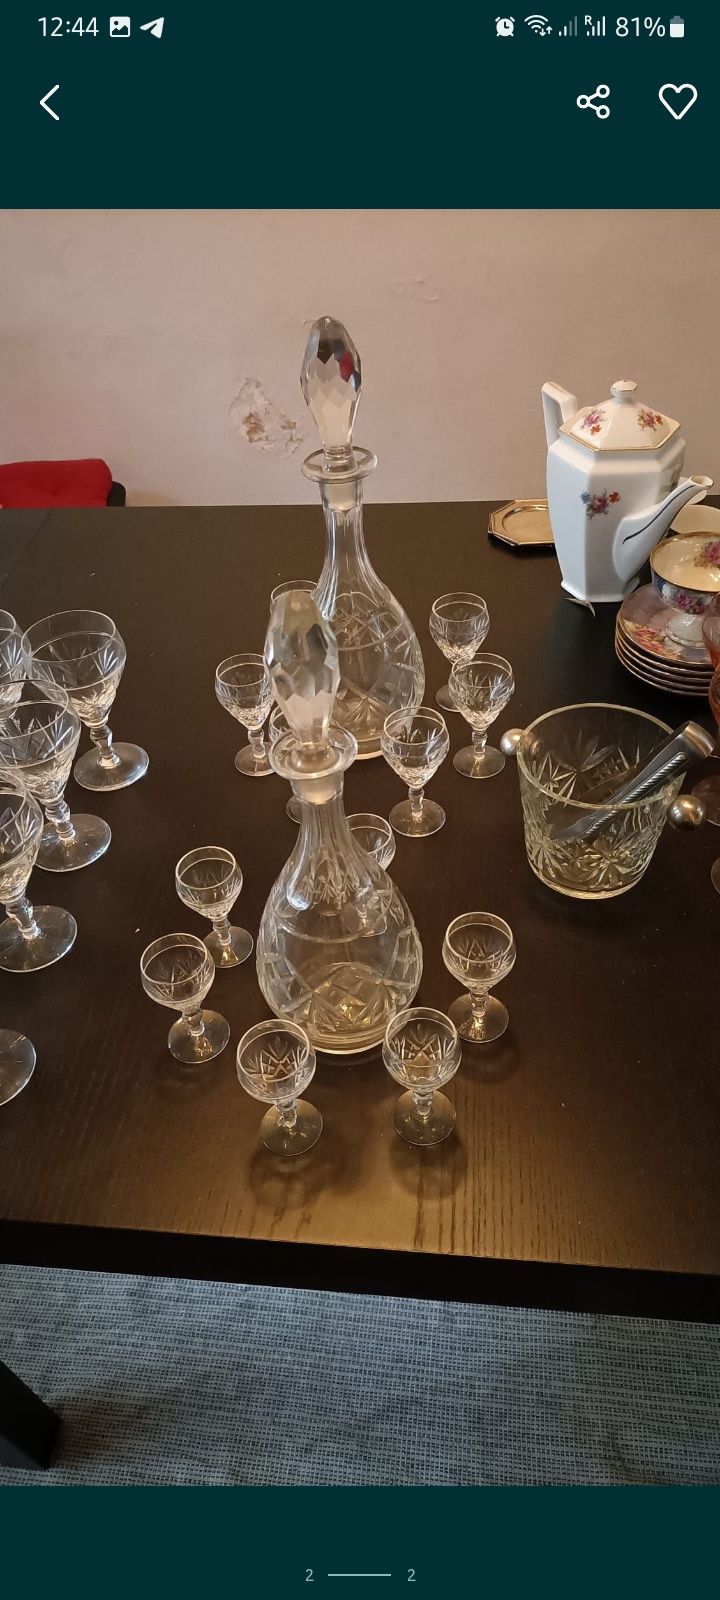 2 Vintage cristal glass and decanter - FAÇA A SUA PROPOSTA